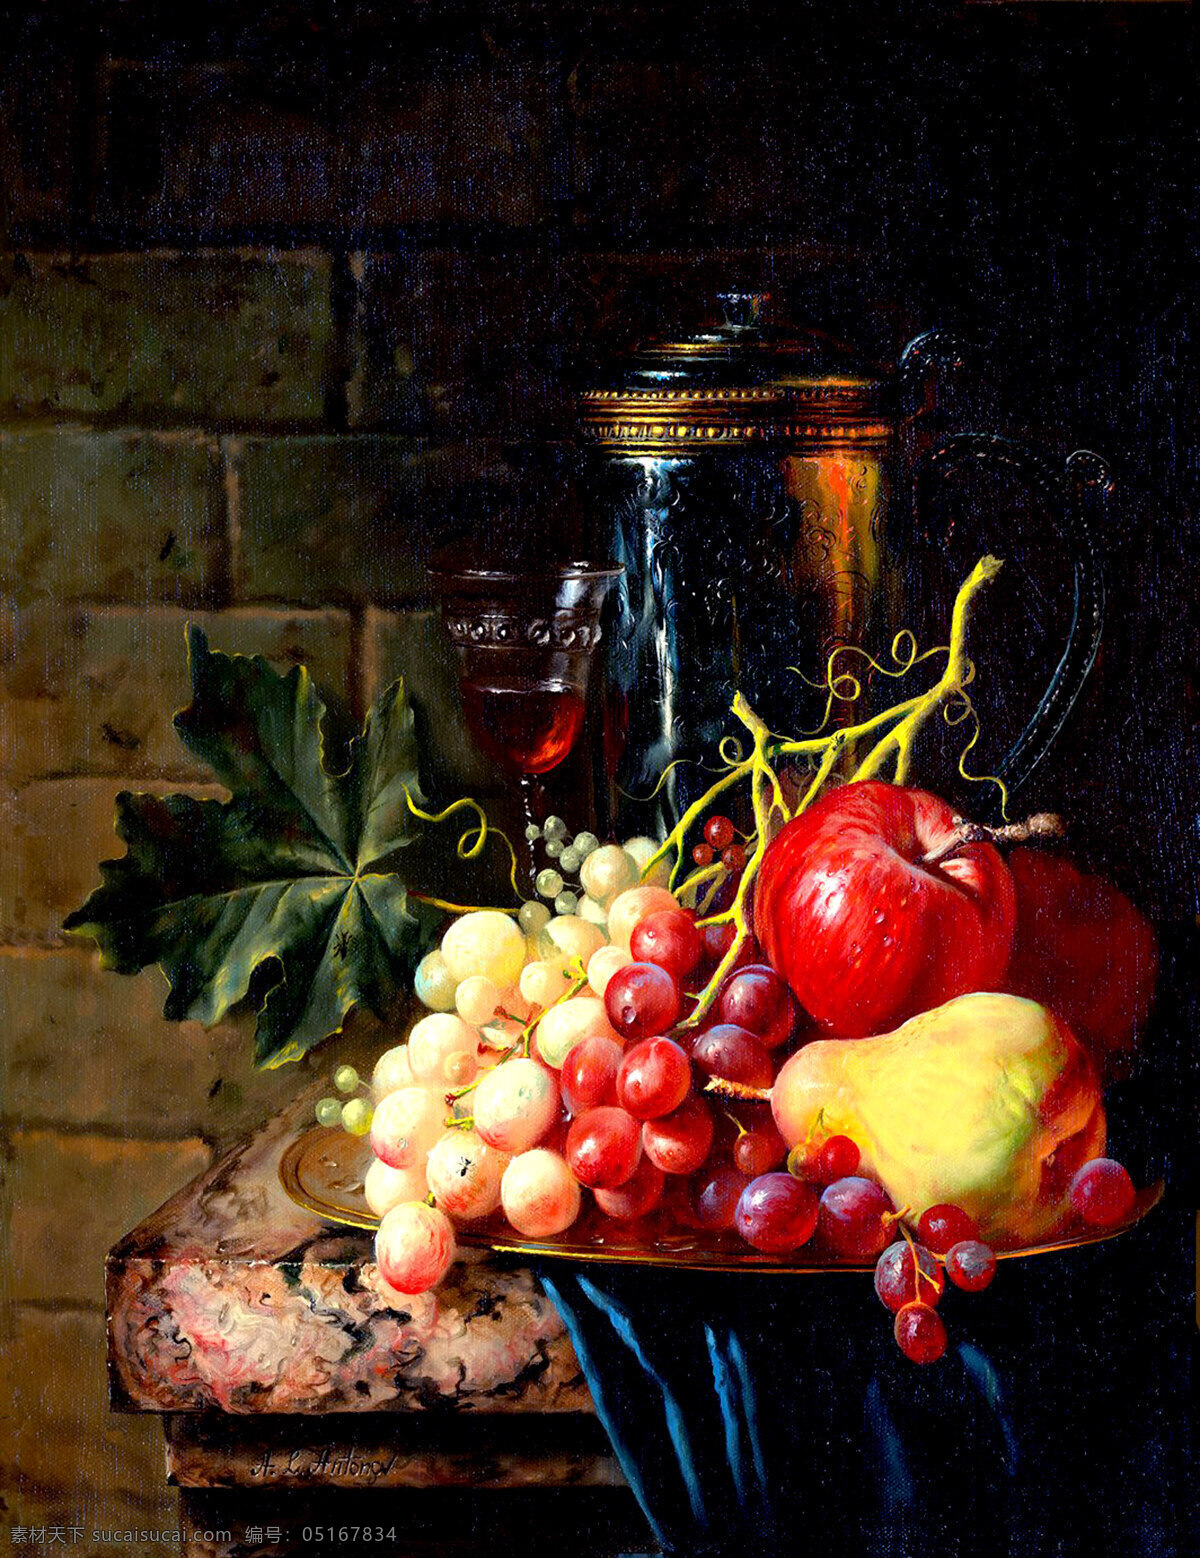 水果静物 美术 绘画 油画 现代油画 静物画 水果 瓶子 苹果 葡萄 梨子 果盆 酒杯 油画艺术 油画作品5 绘画书法 文化艺术